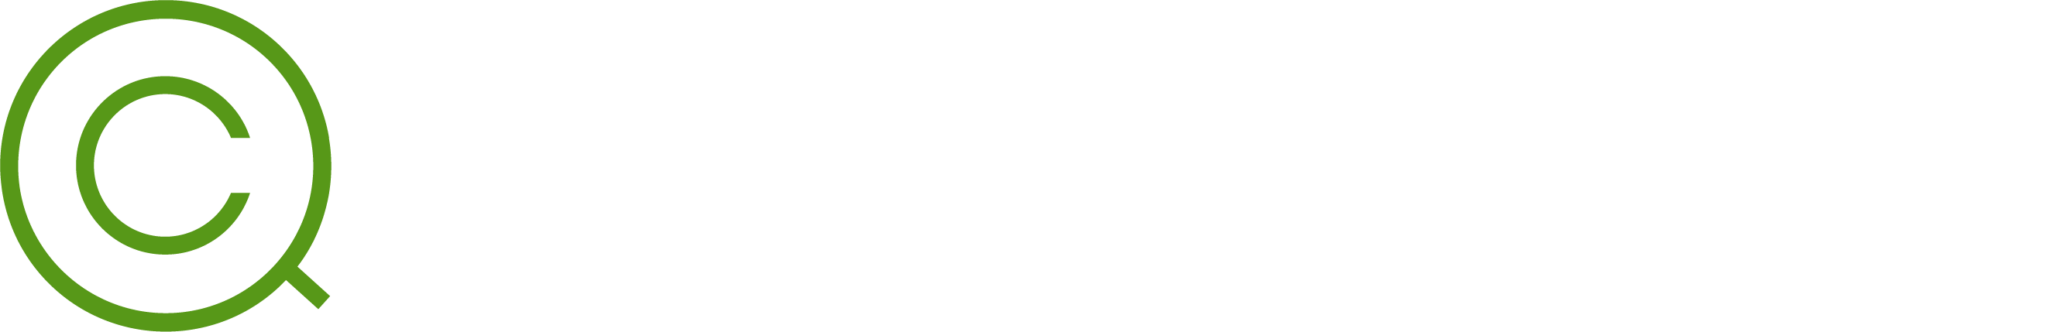 Quick Claim Cash Logo